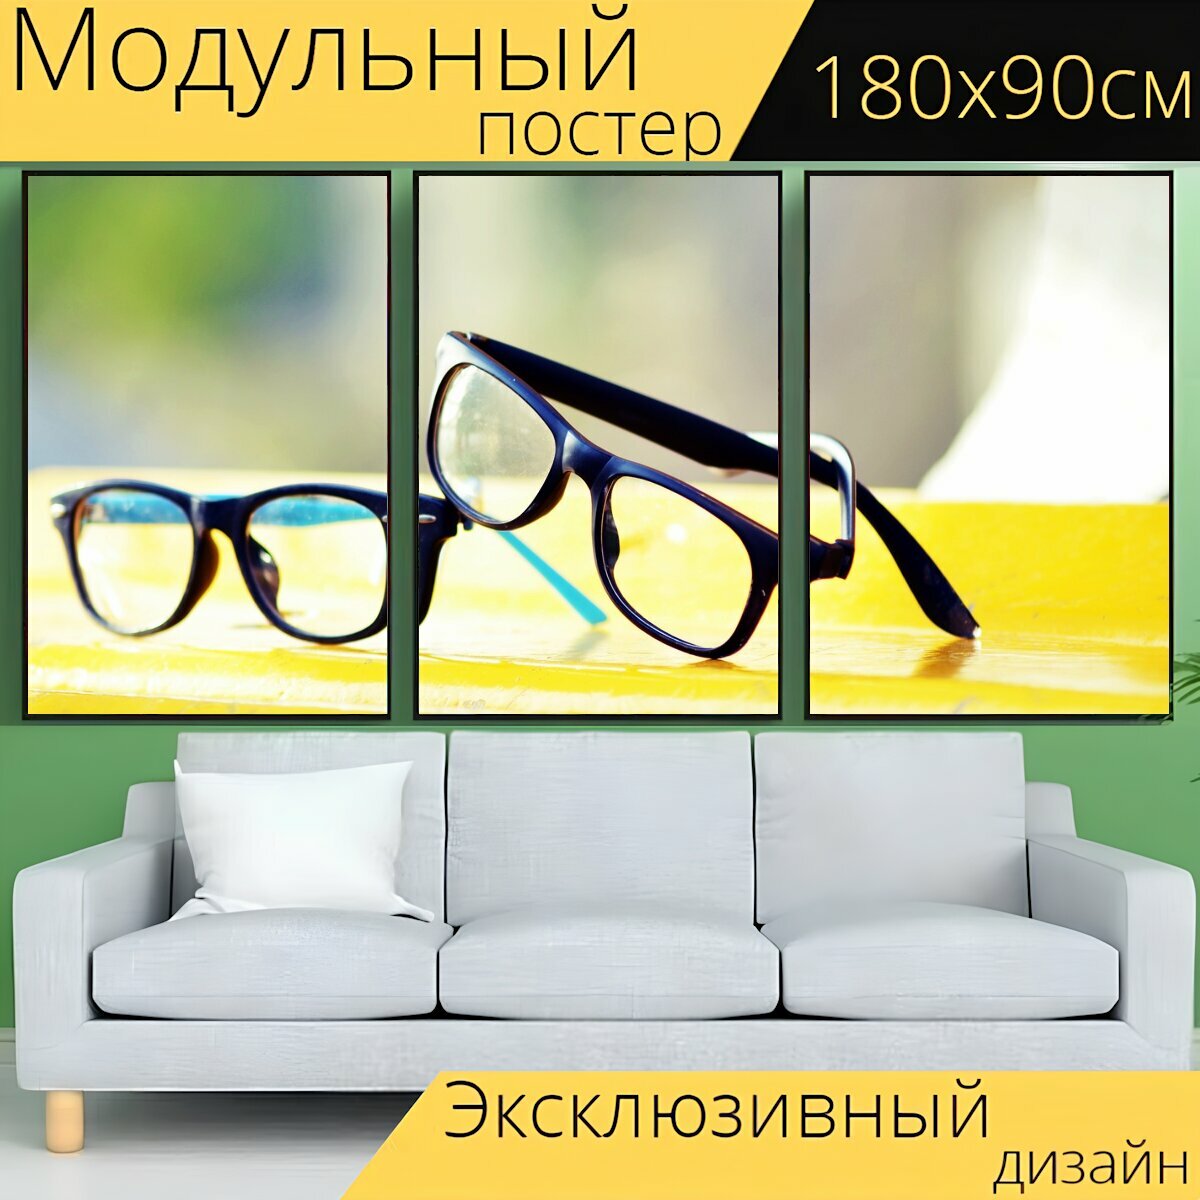 Модульный постер "Очки, очки защитные, винтажные очки" 180 x 90 см. для интерьера